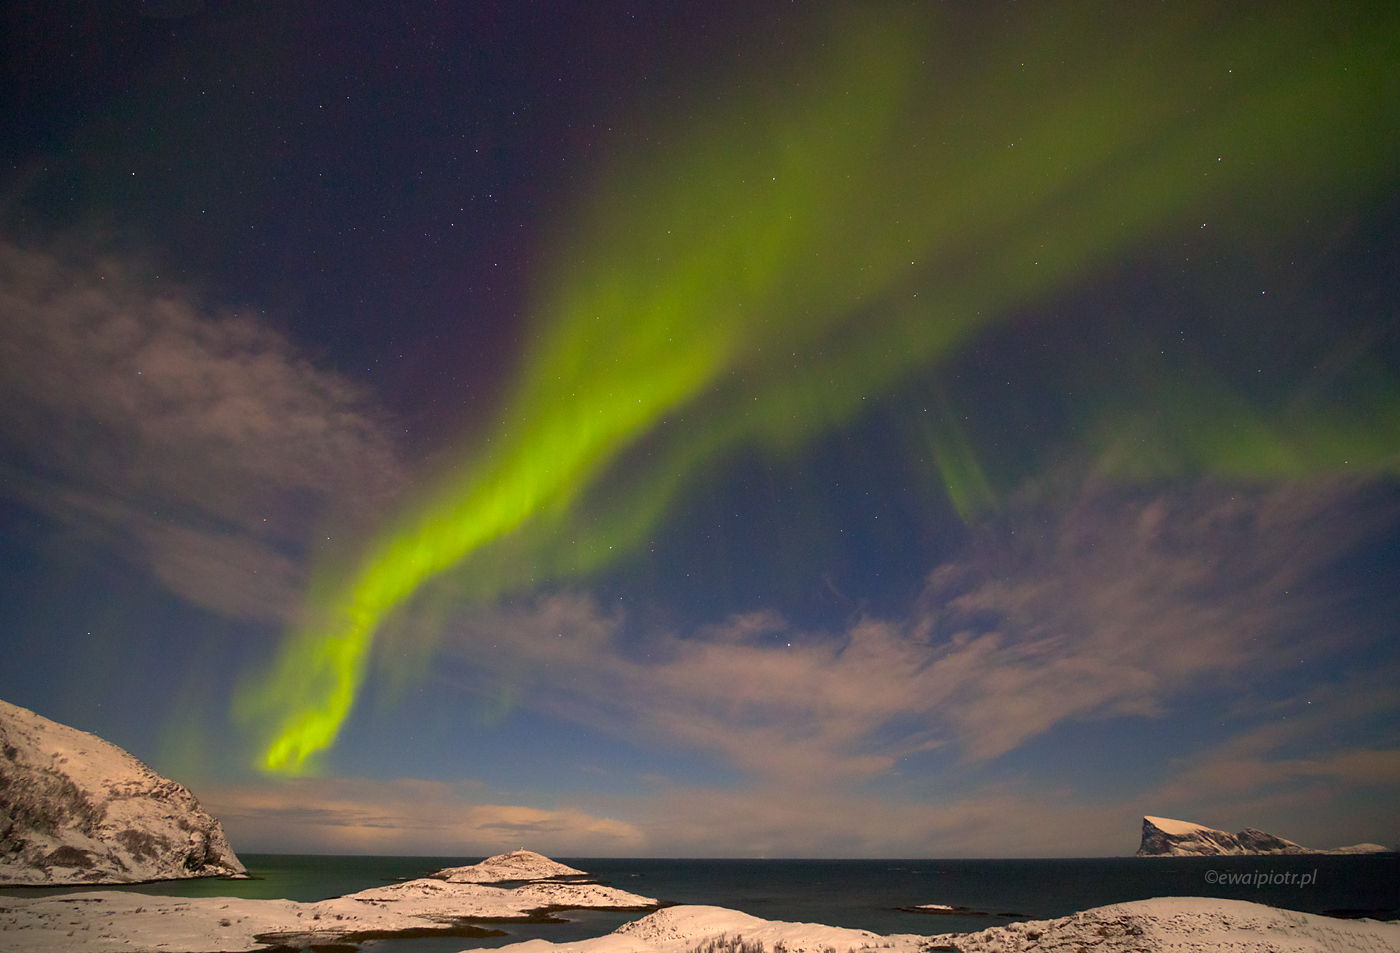 Aurora borealis i śnieżne wybrzeże, Norwegia, zorza polarna, warsztaty fotograficzne, polowanie na zorzę